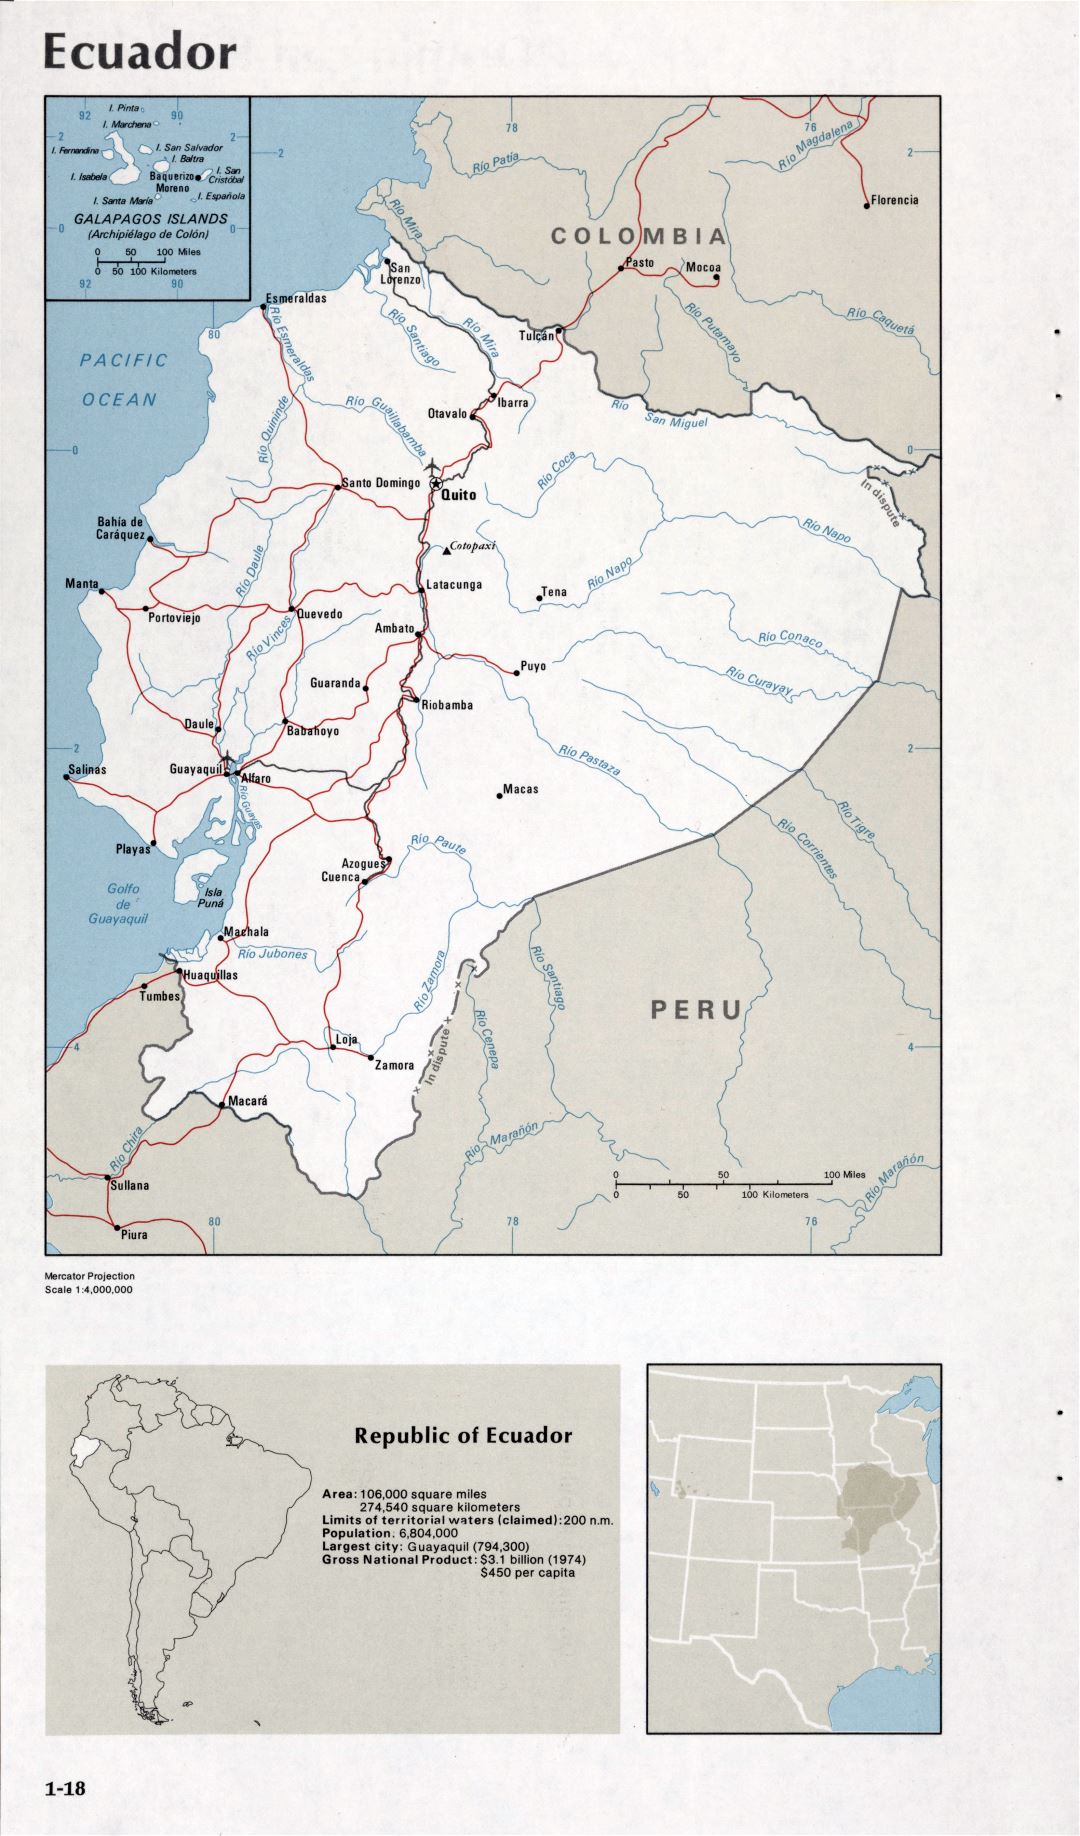 Map of Ecuador (1-18)